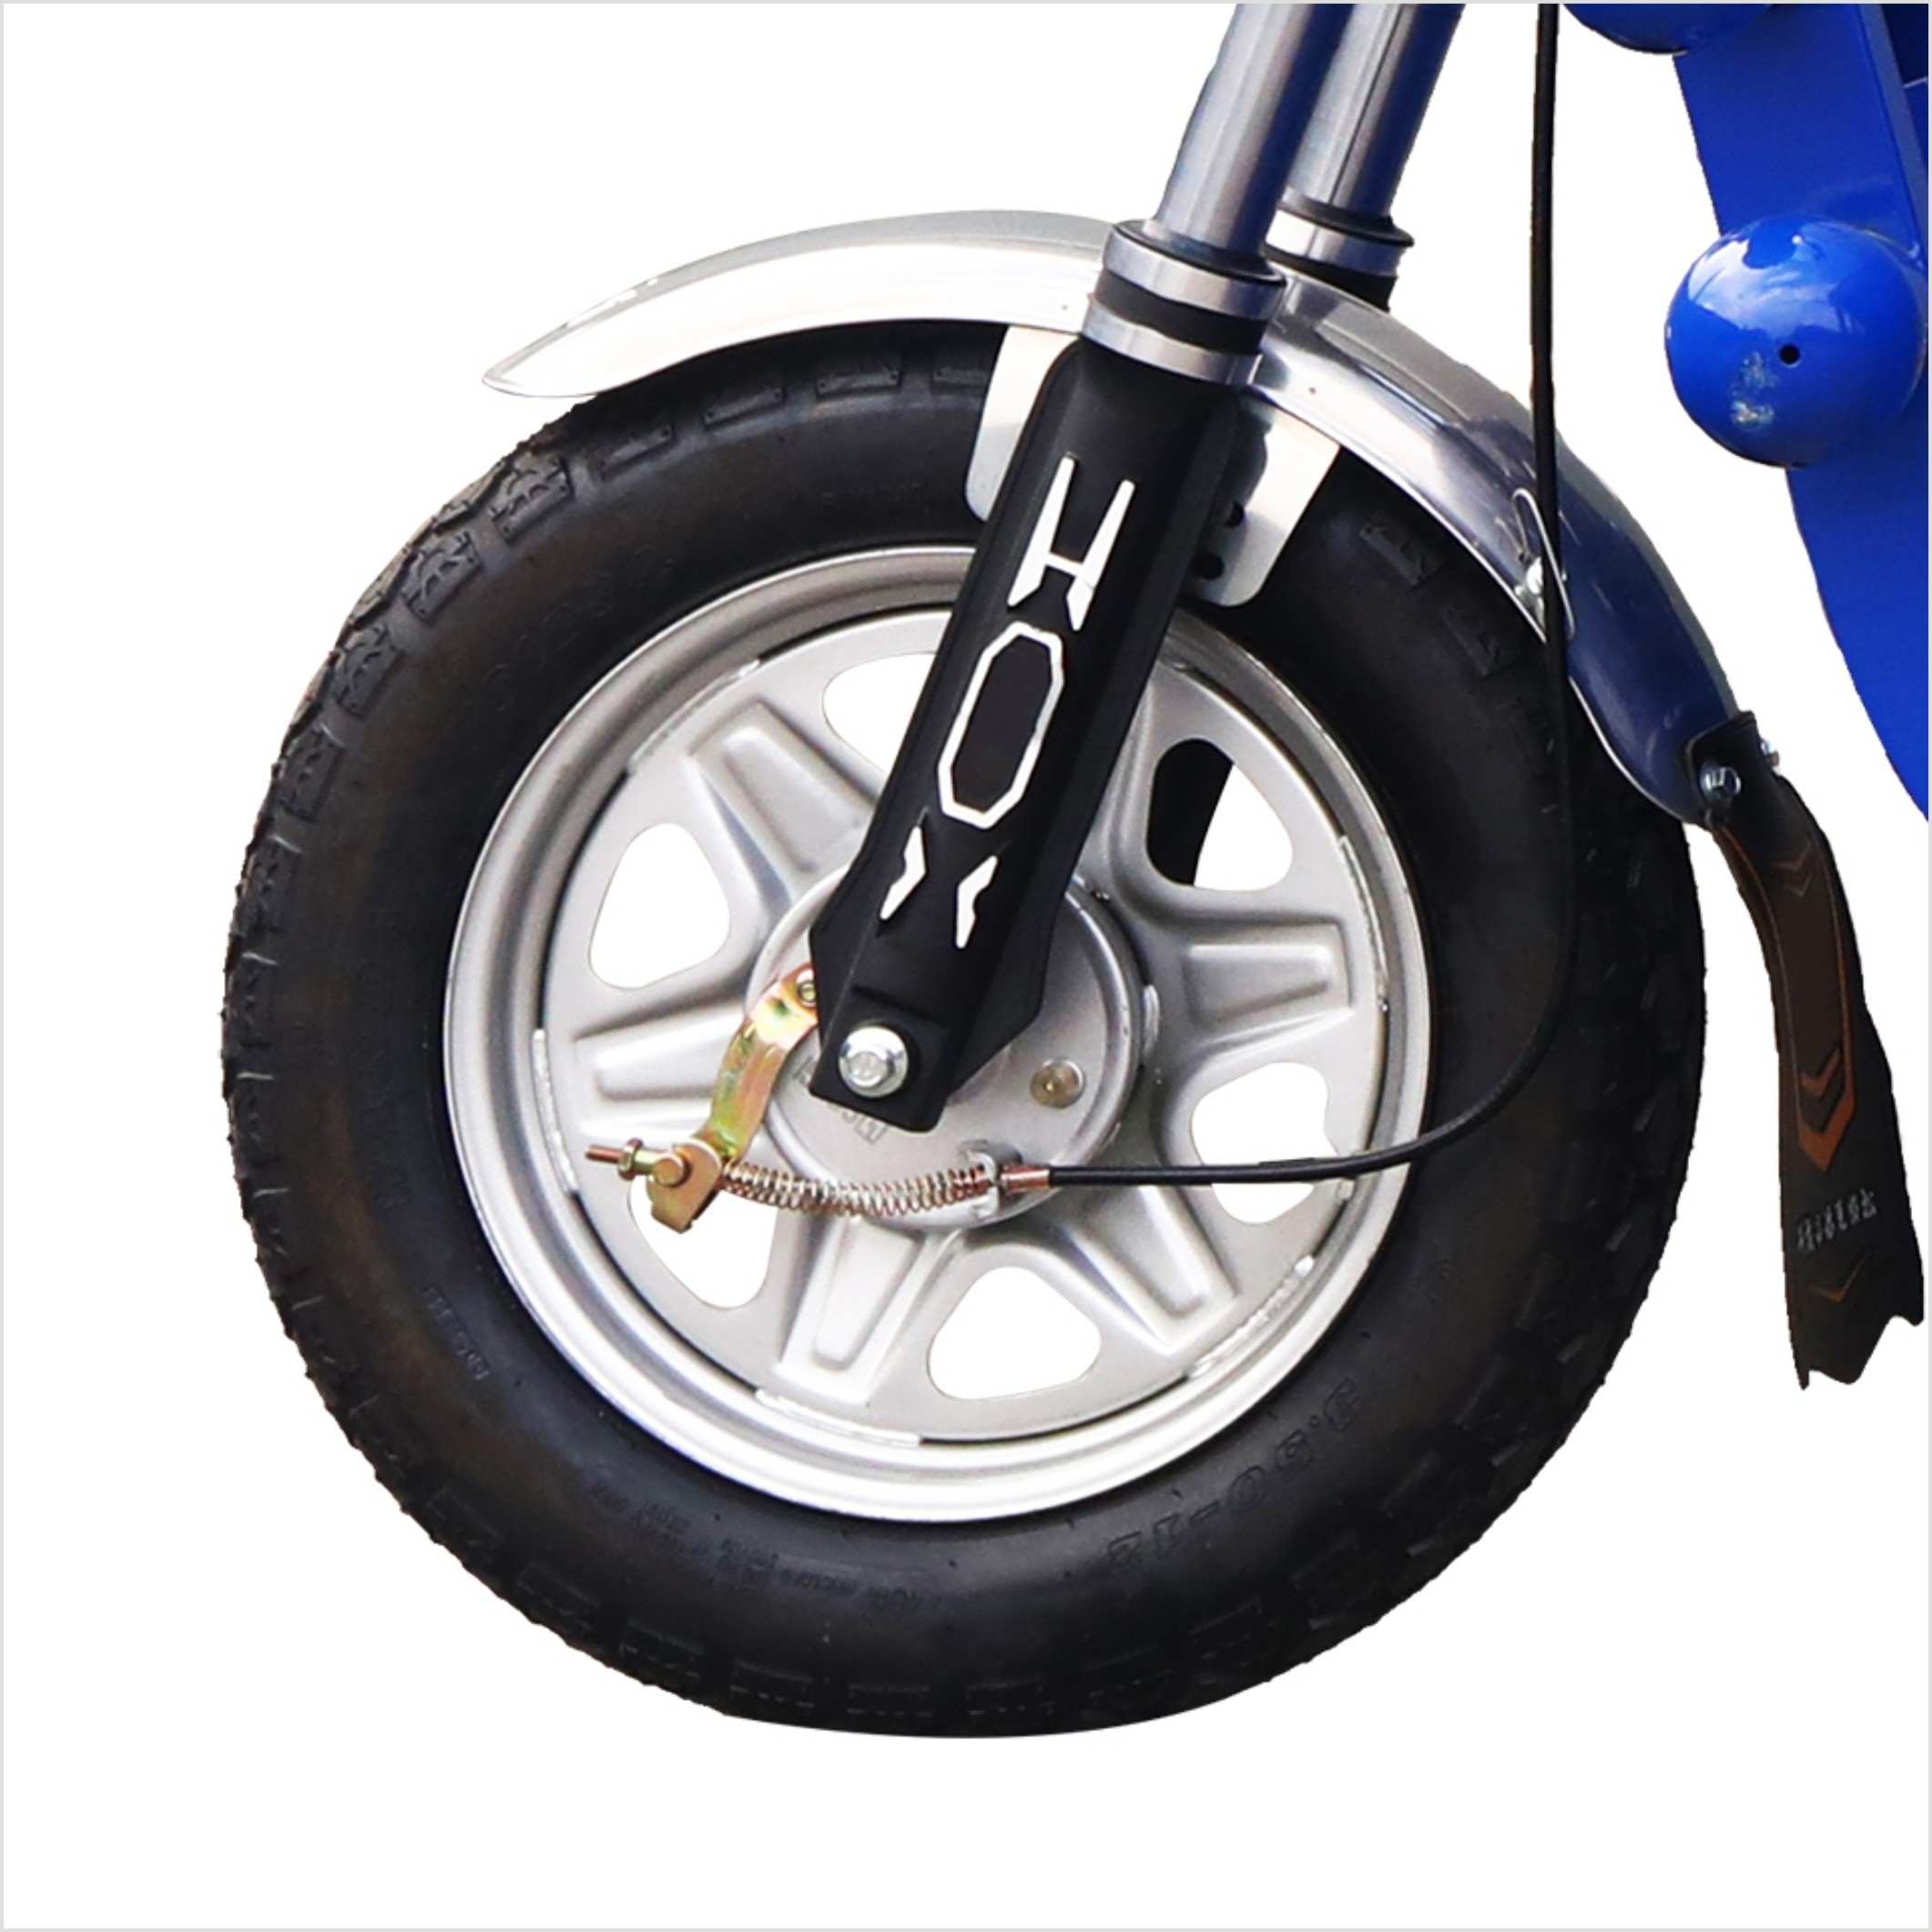 Nakup Praktičen električni tricikel,Praktičen električni tricikel Cena,Praktičen električni tricikel blagovne znamke,Praktičen električni tricikel Proizvajalec,Praktičen električni tricikel Quotes,Praktičen električni tricikel podjetje.